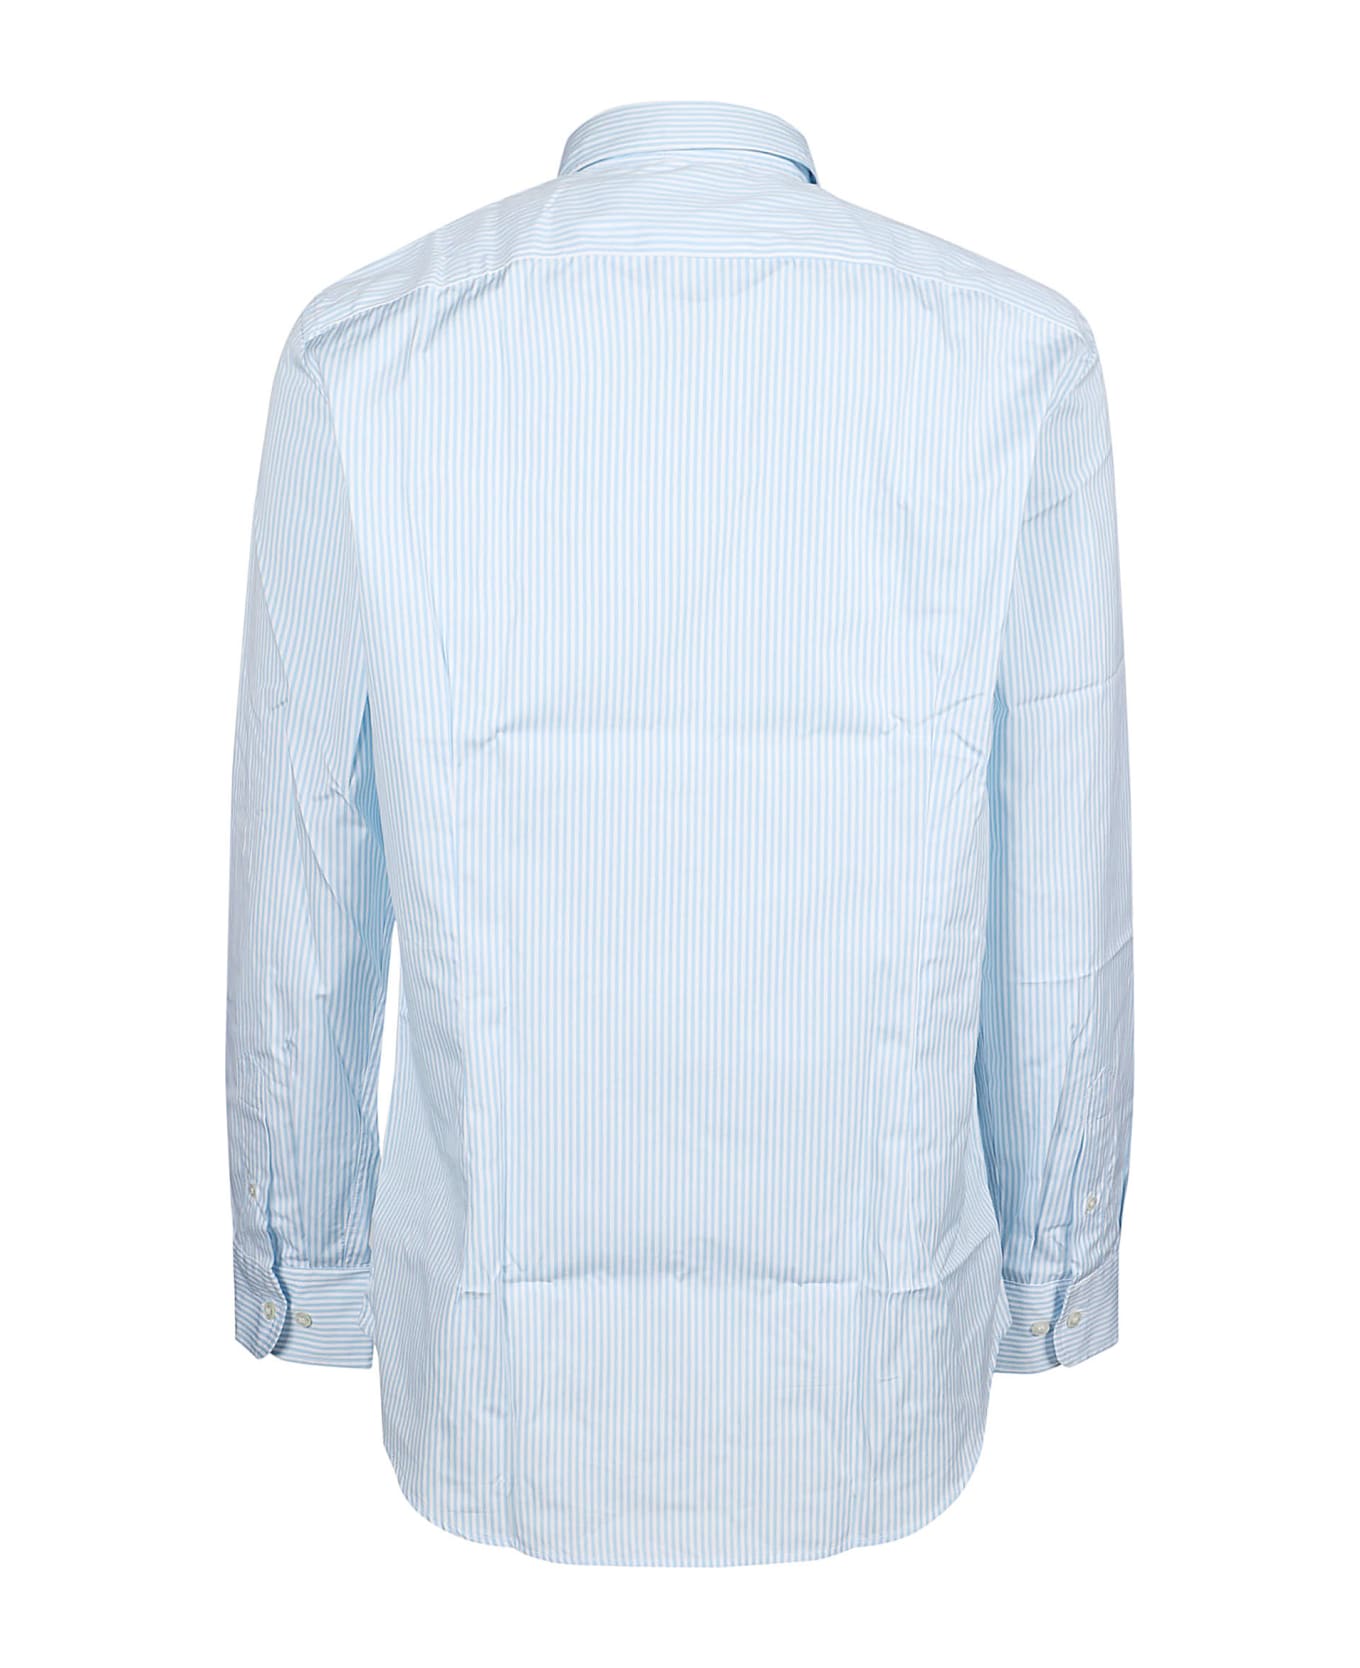 Etro Roma Long Sleeve Shirt - Bianco/azzurro